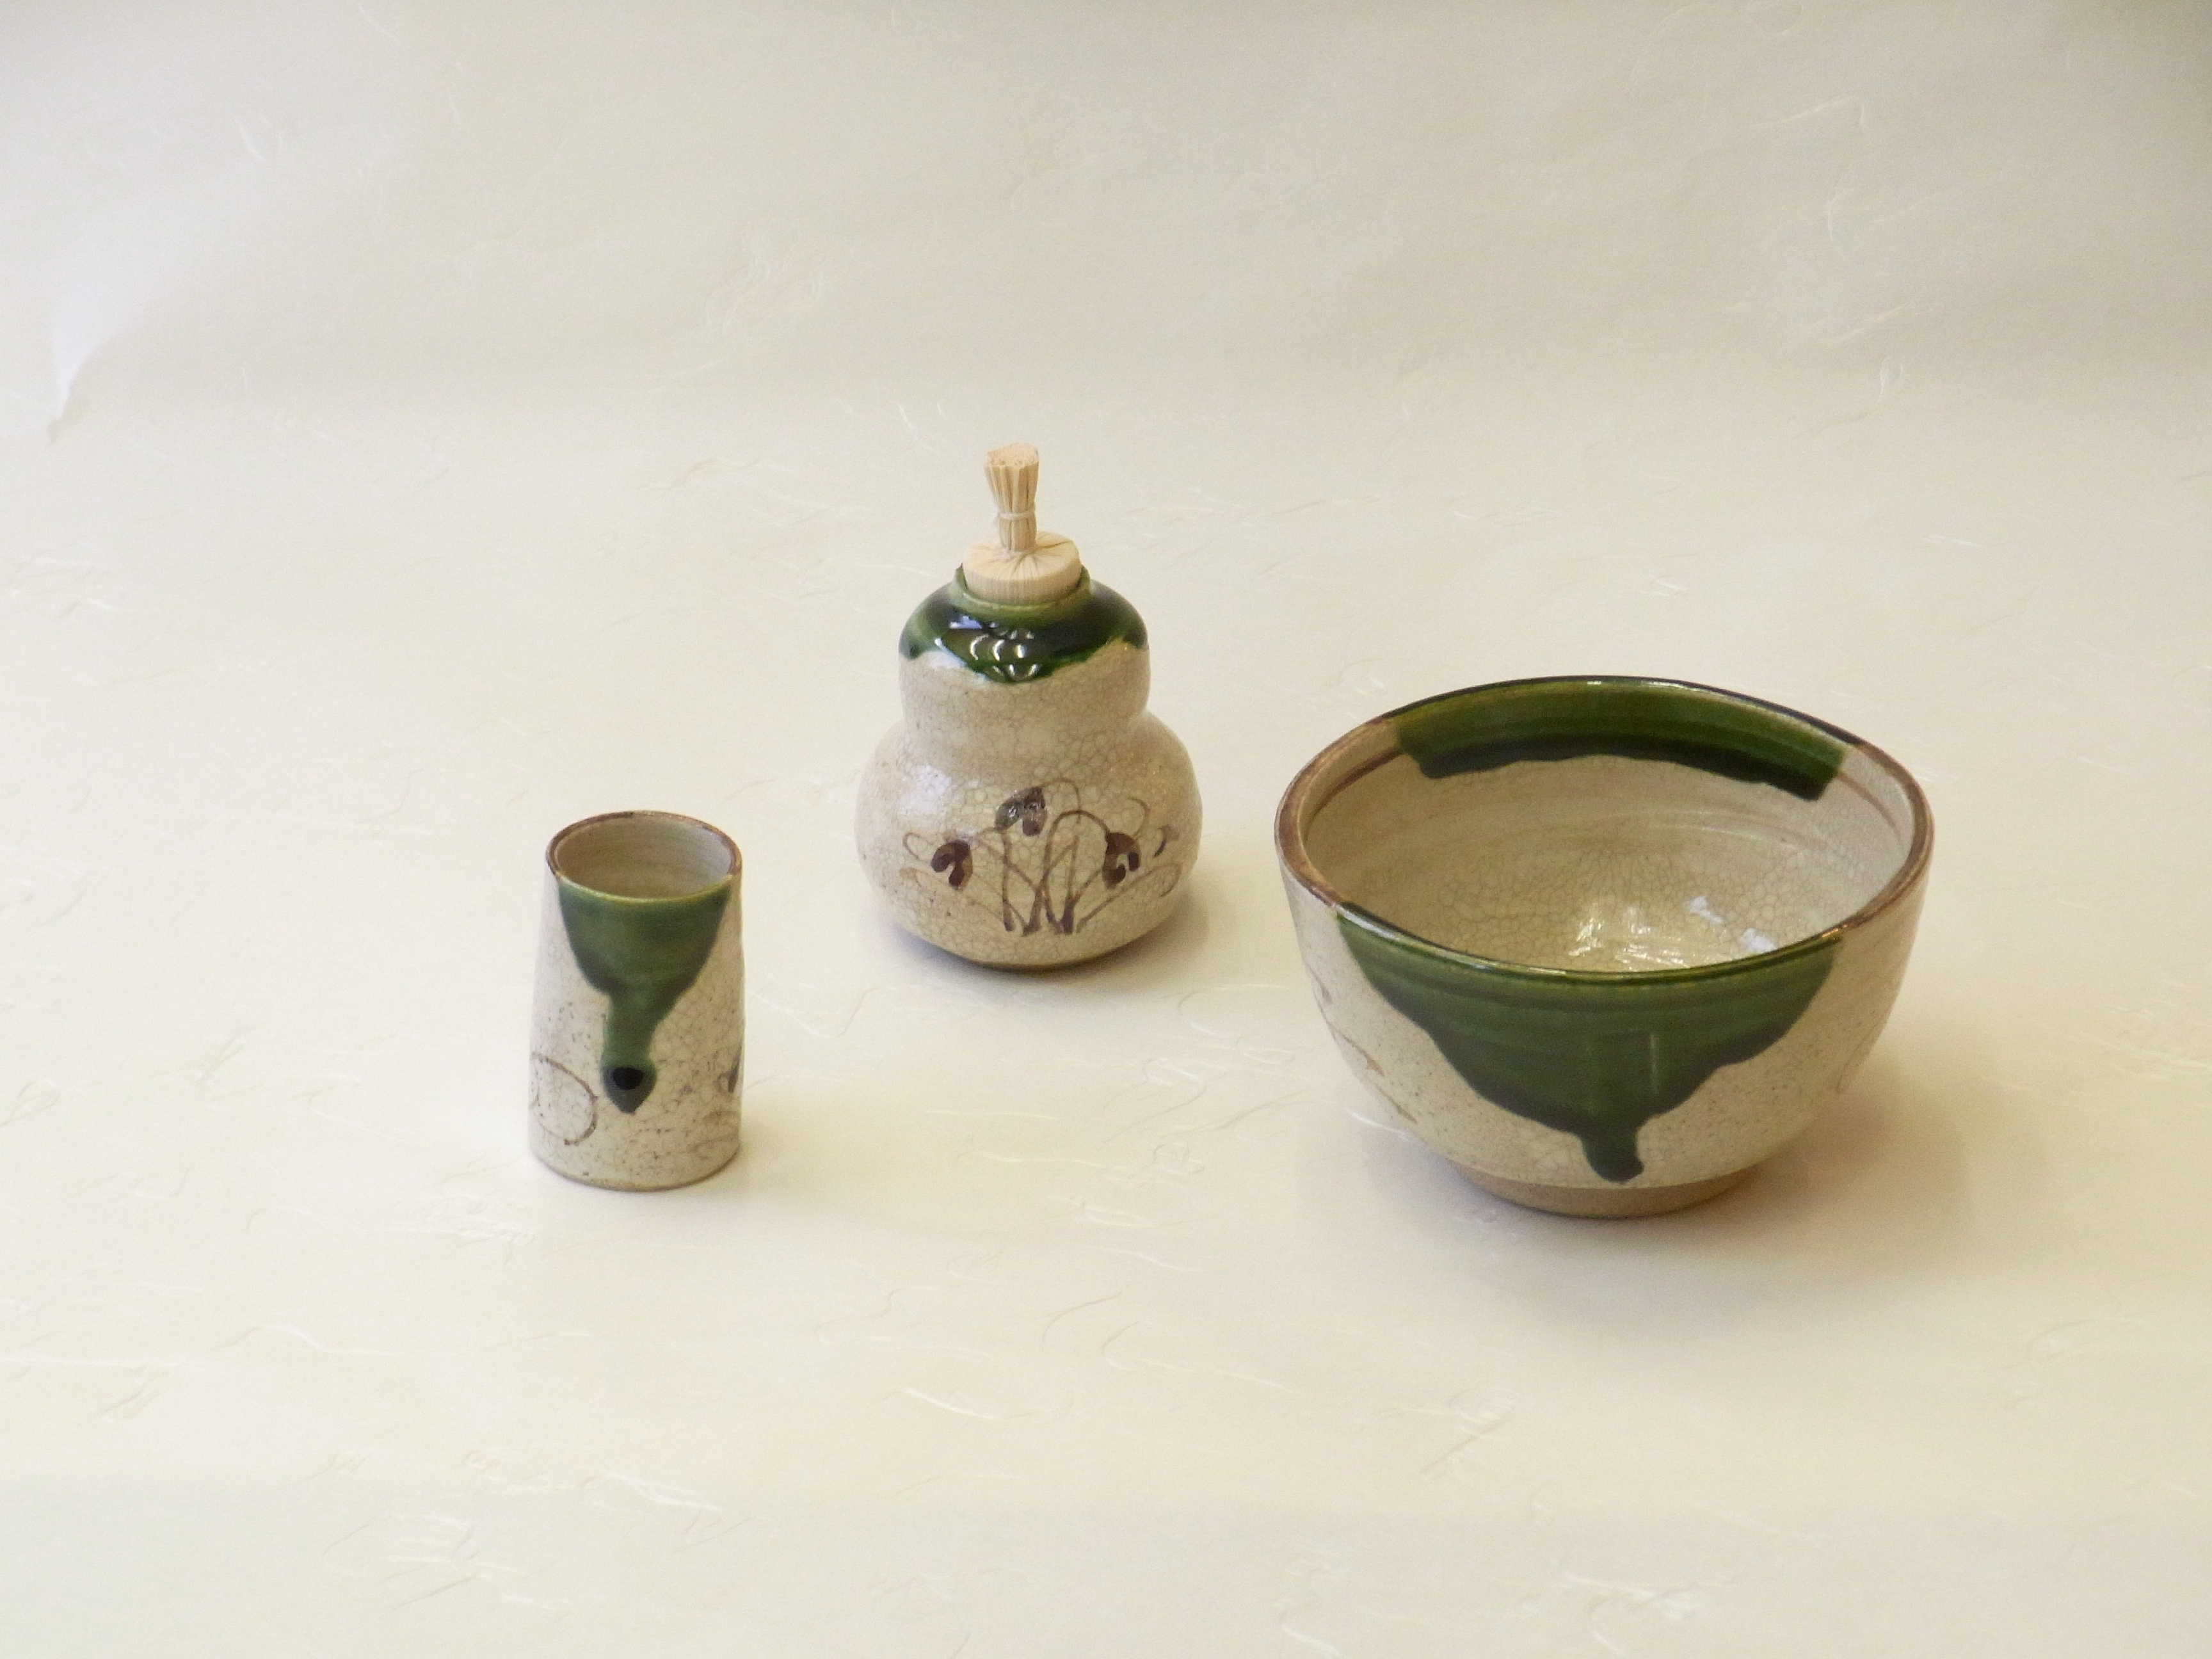 抹茶碗・振出・茶巾筒 三点セット（茶箱・野点用） | 小林漆陶 映える器ギャラリー 岐阜市| 日本一の漆陶器 茶道具の品揃えと在庫 | 漆器